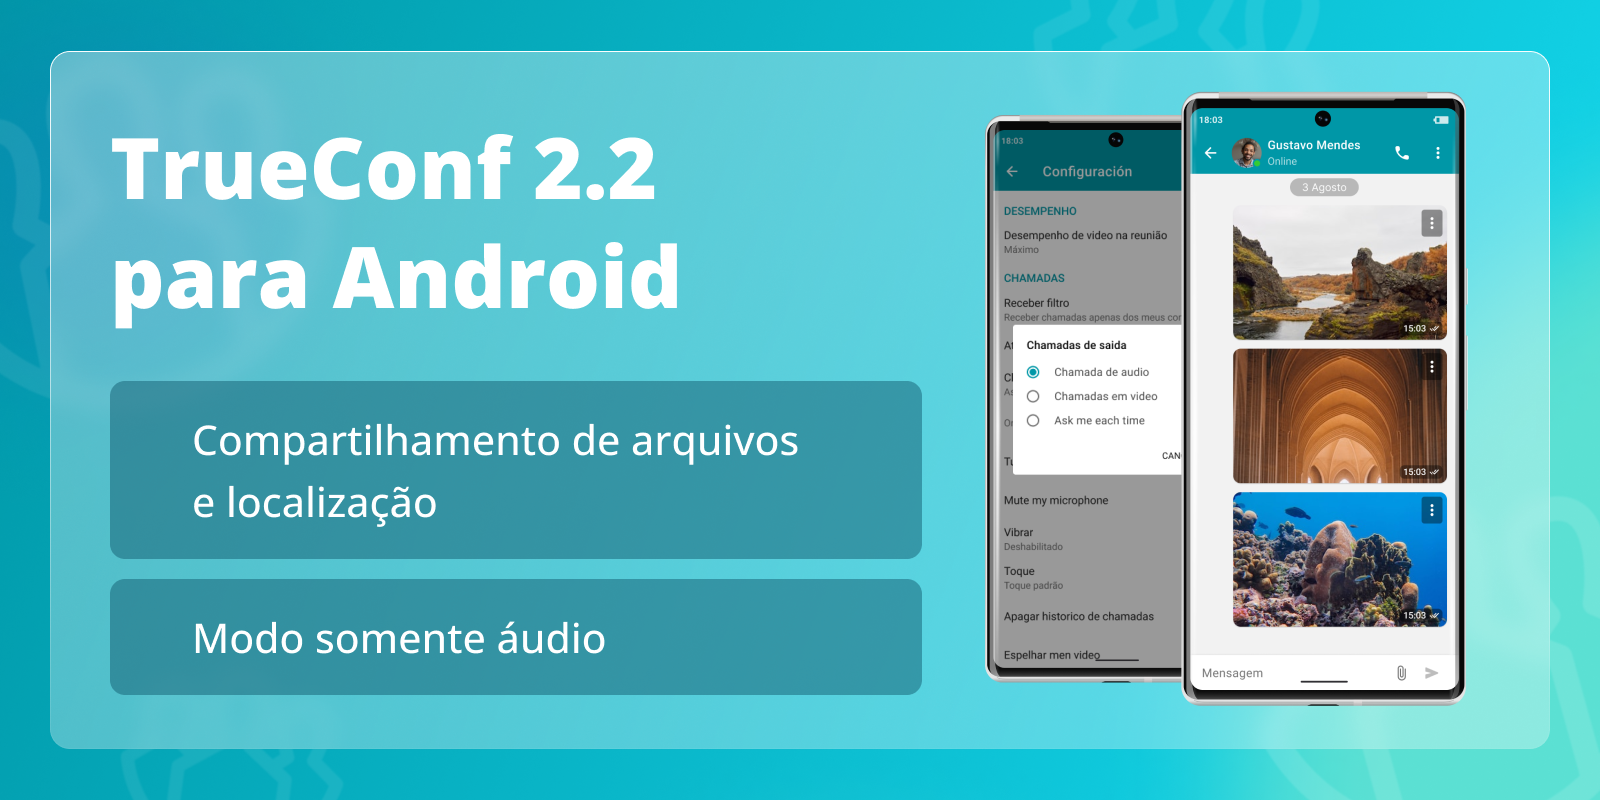 TrueConf 2.2 para Android: modo somente áudio e compartilhamento de arquivos 10